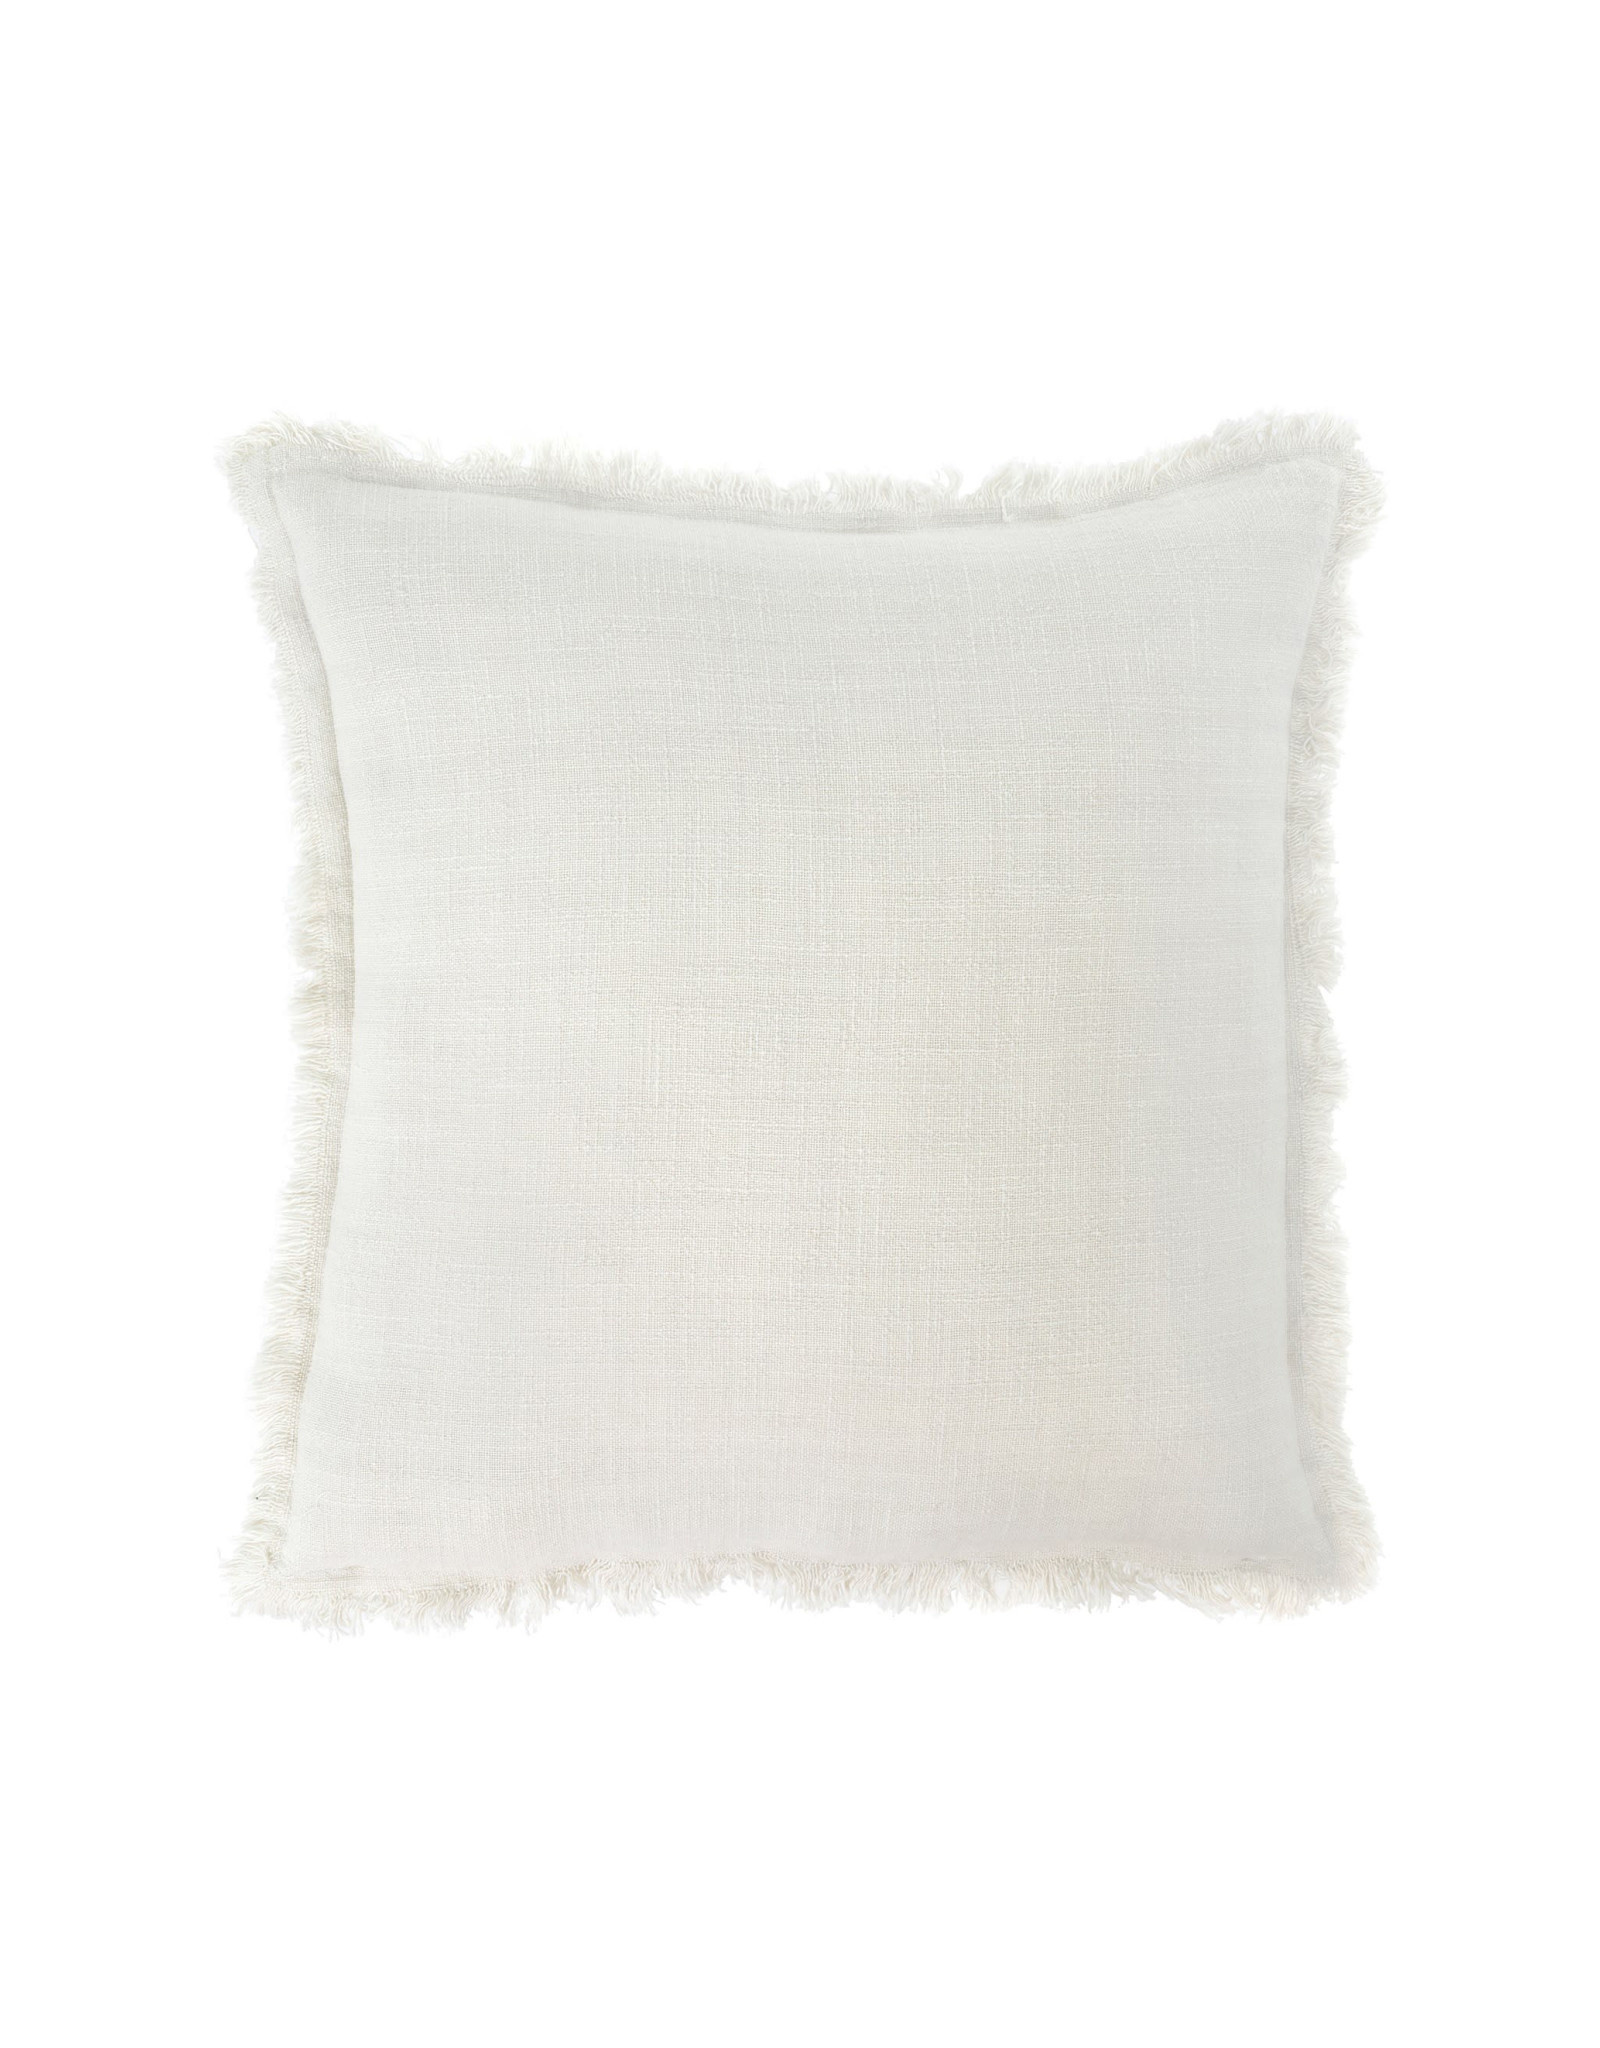 Indaba Frayed Edge Pillow - Ivory